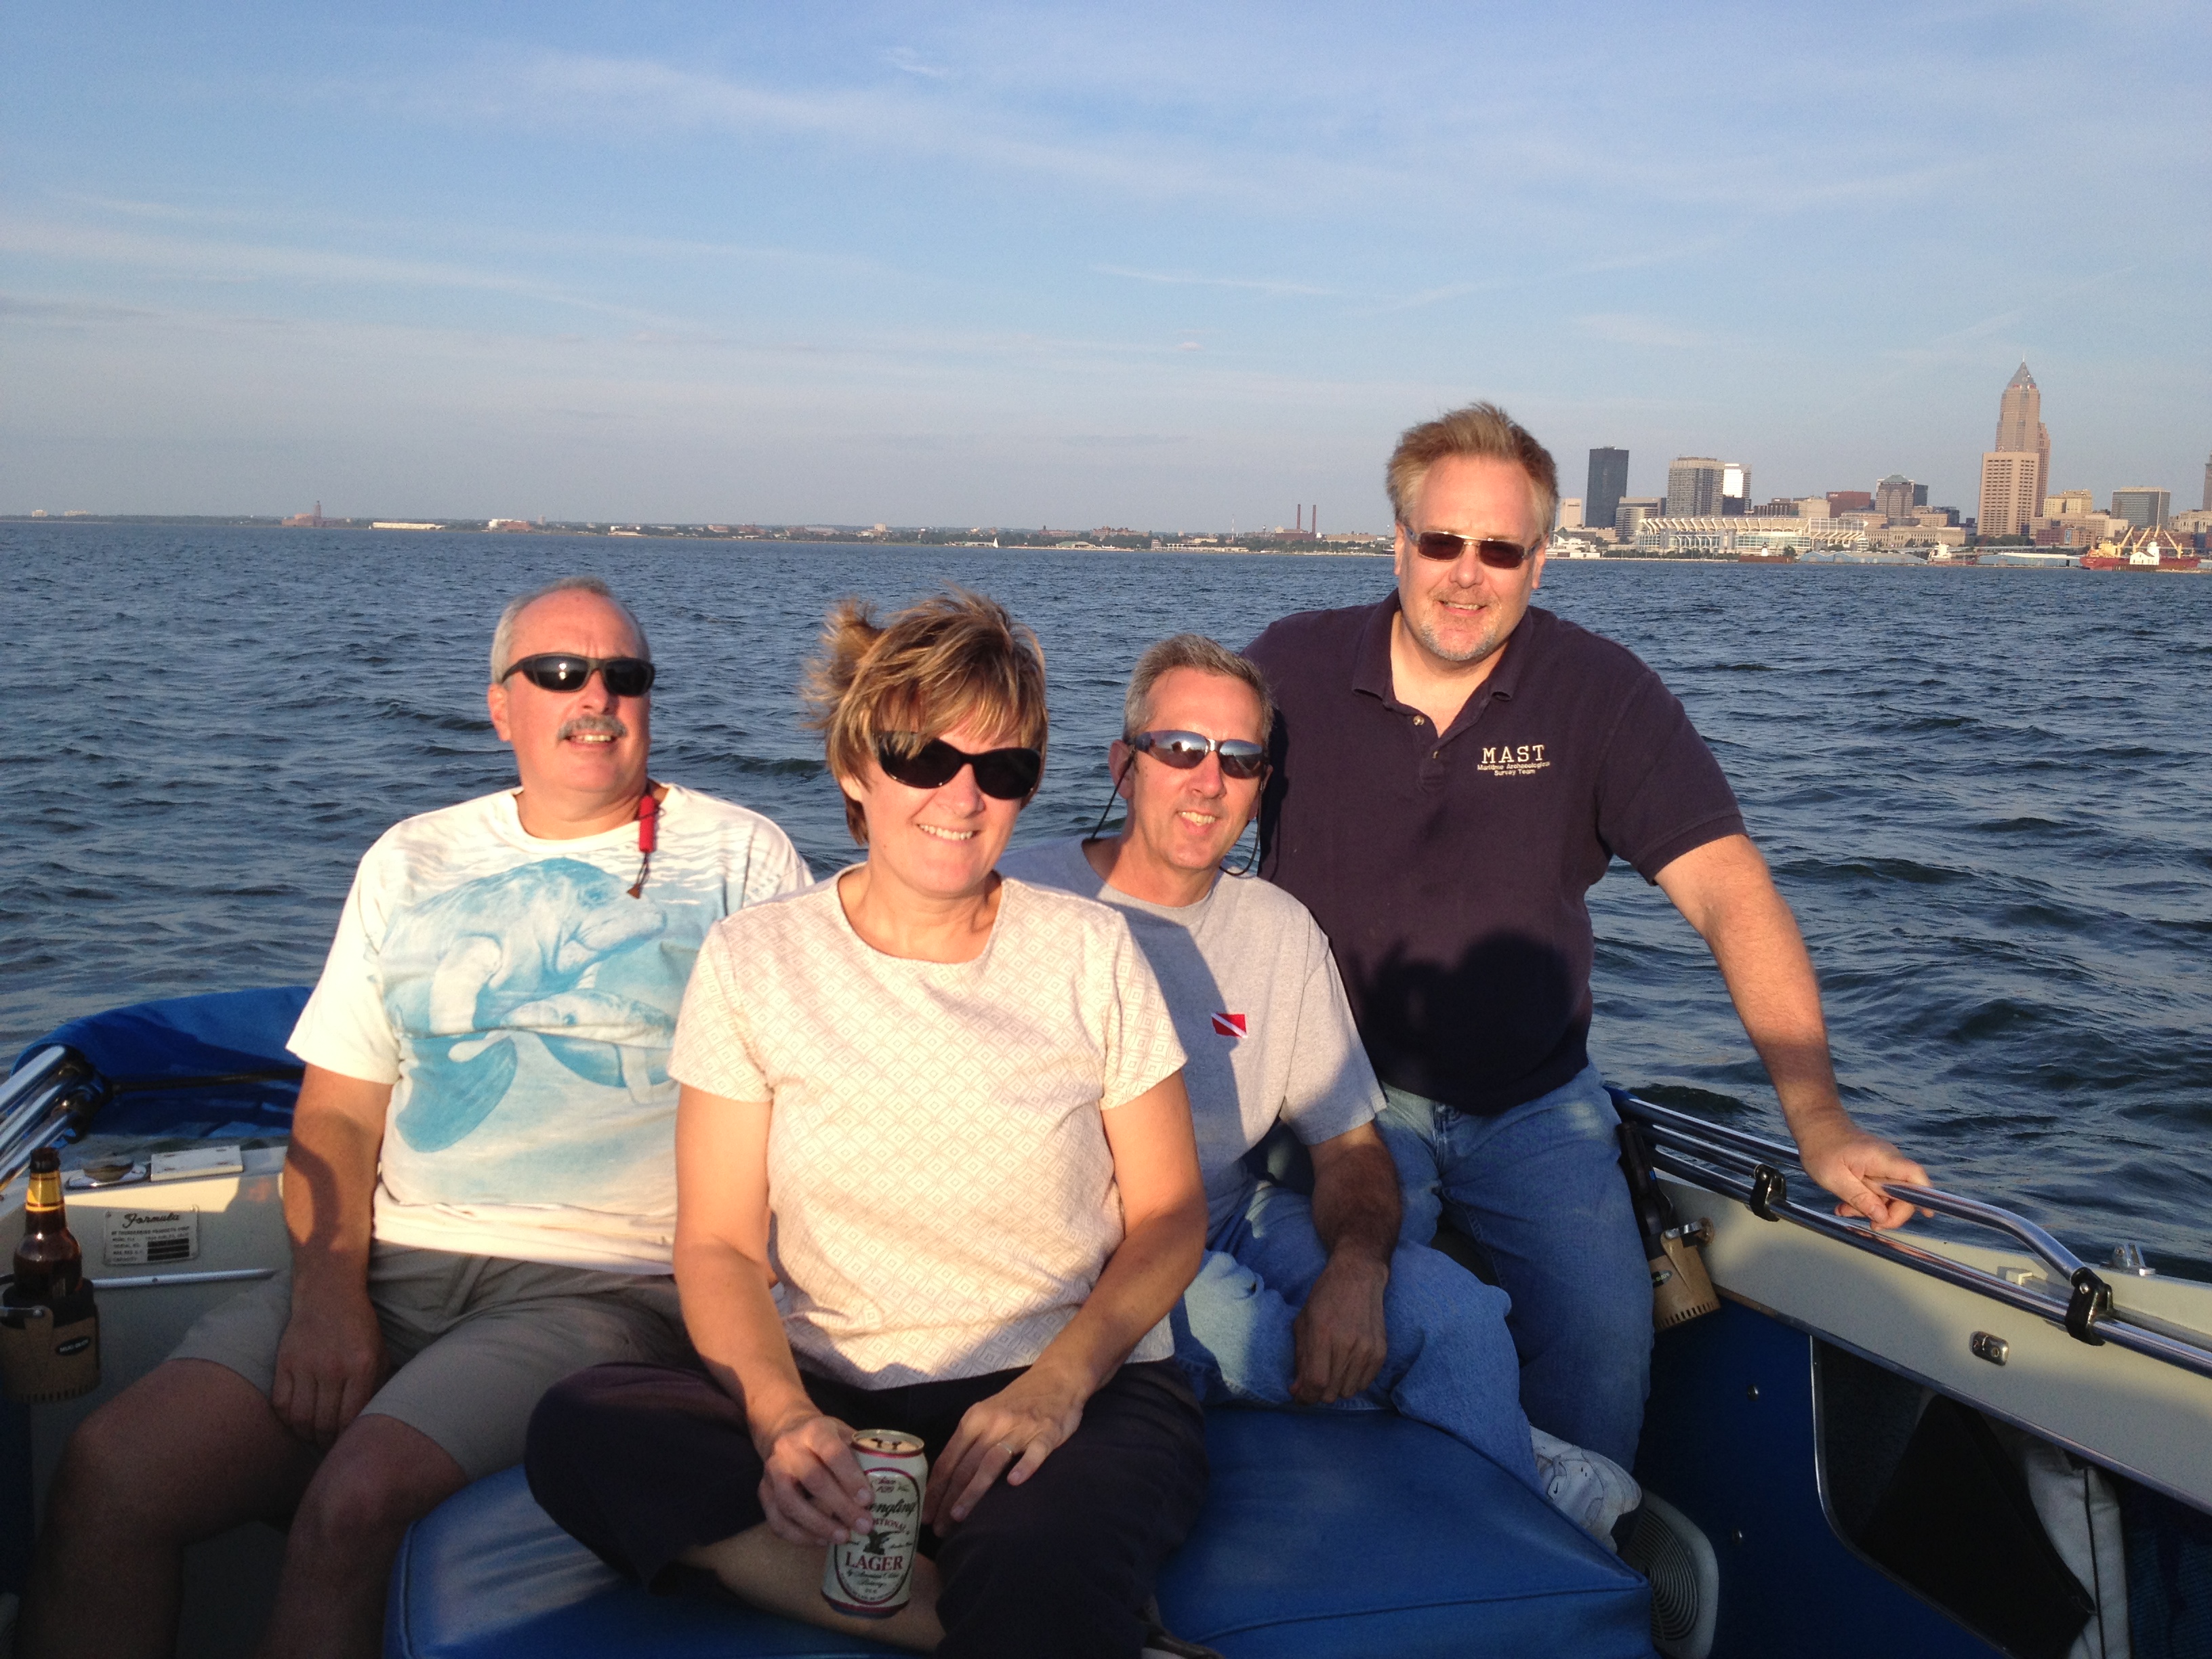 Amigos on Lake Erie